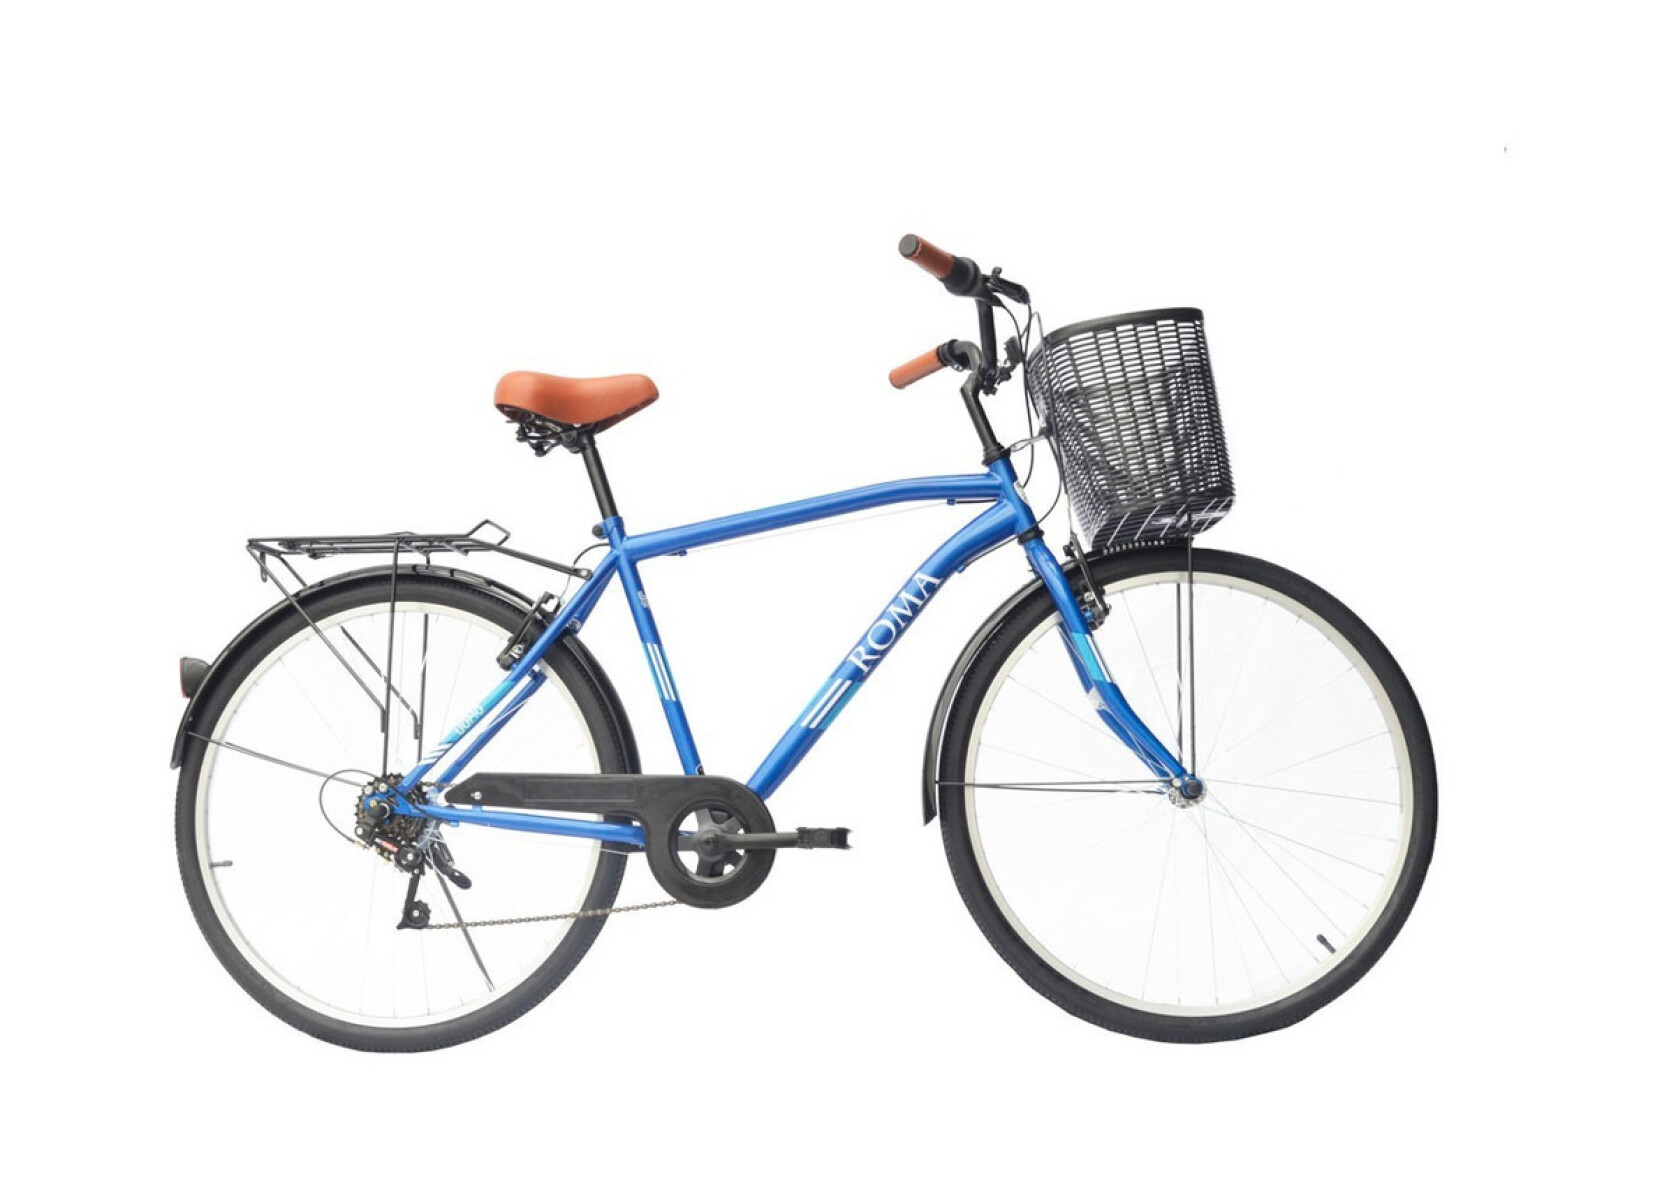 Bicicleta Paseo Masculina Roma Uomo City R26 6v Color Azul Con Pie De Apoyo 